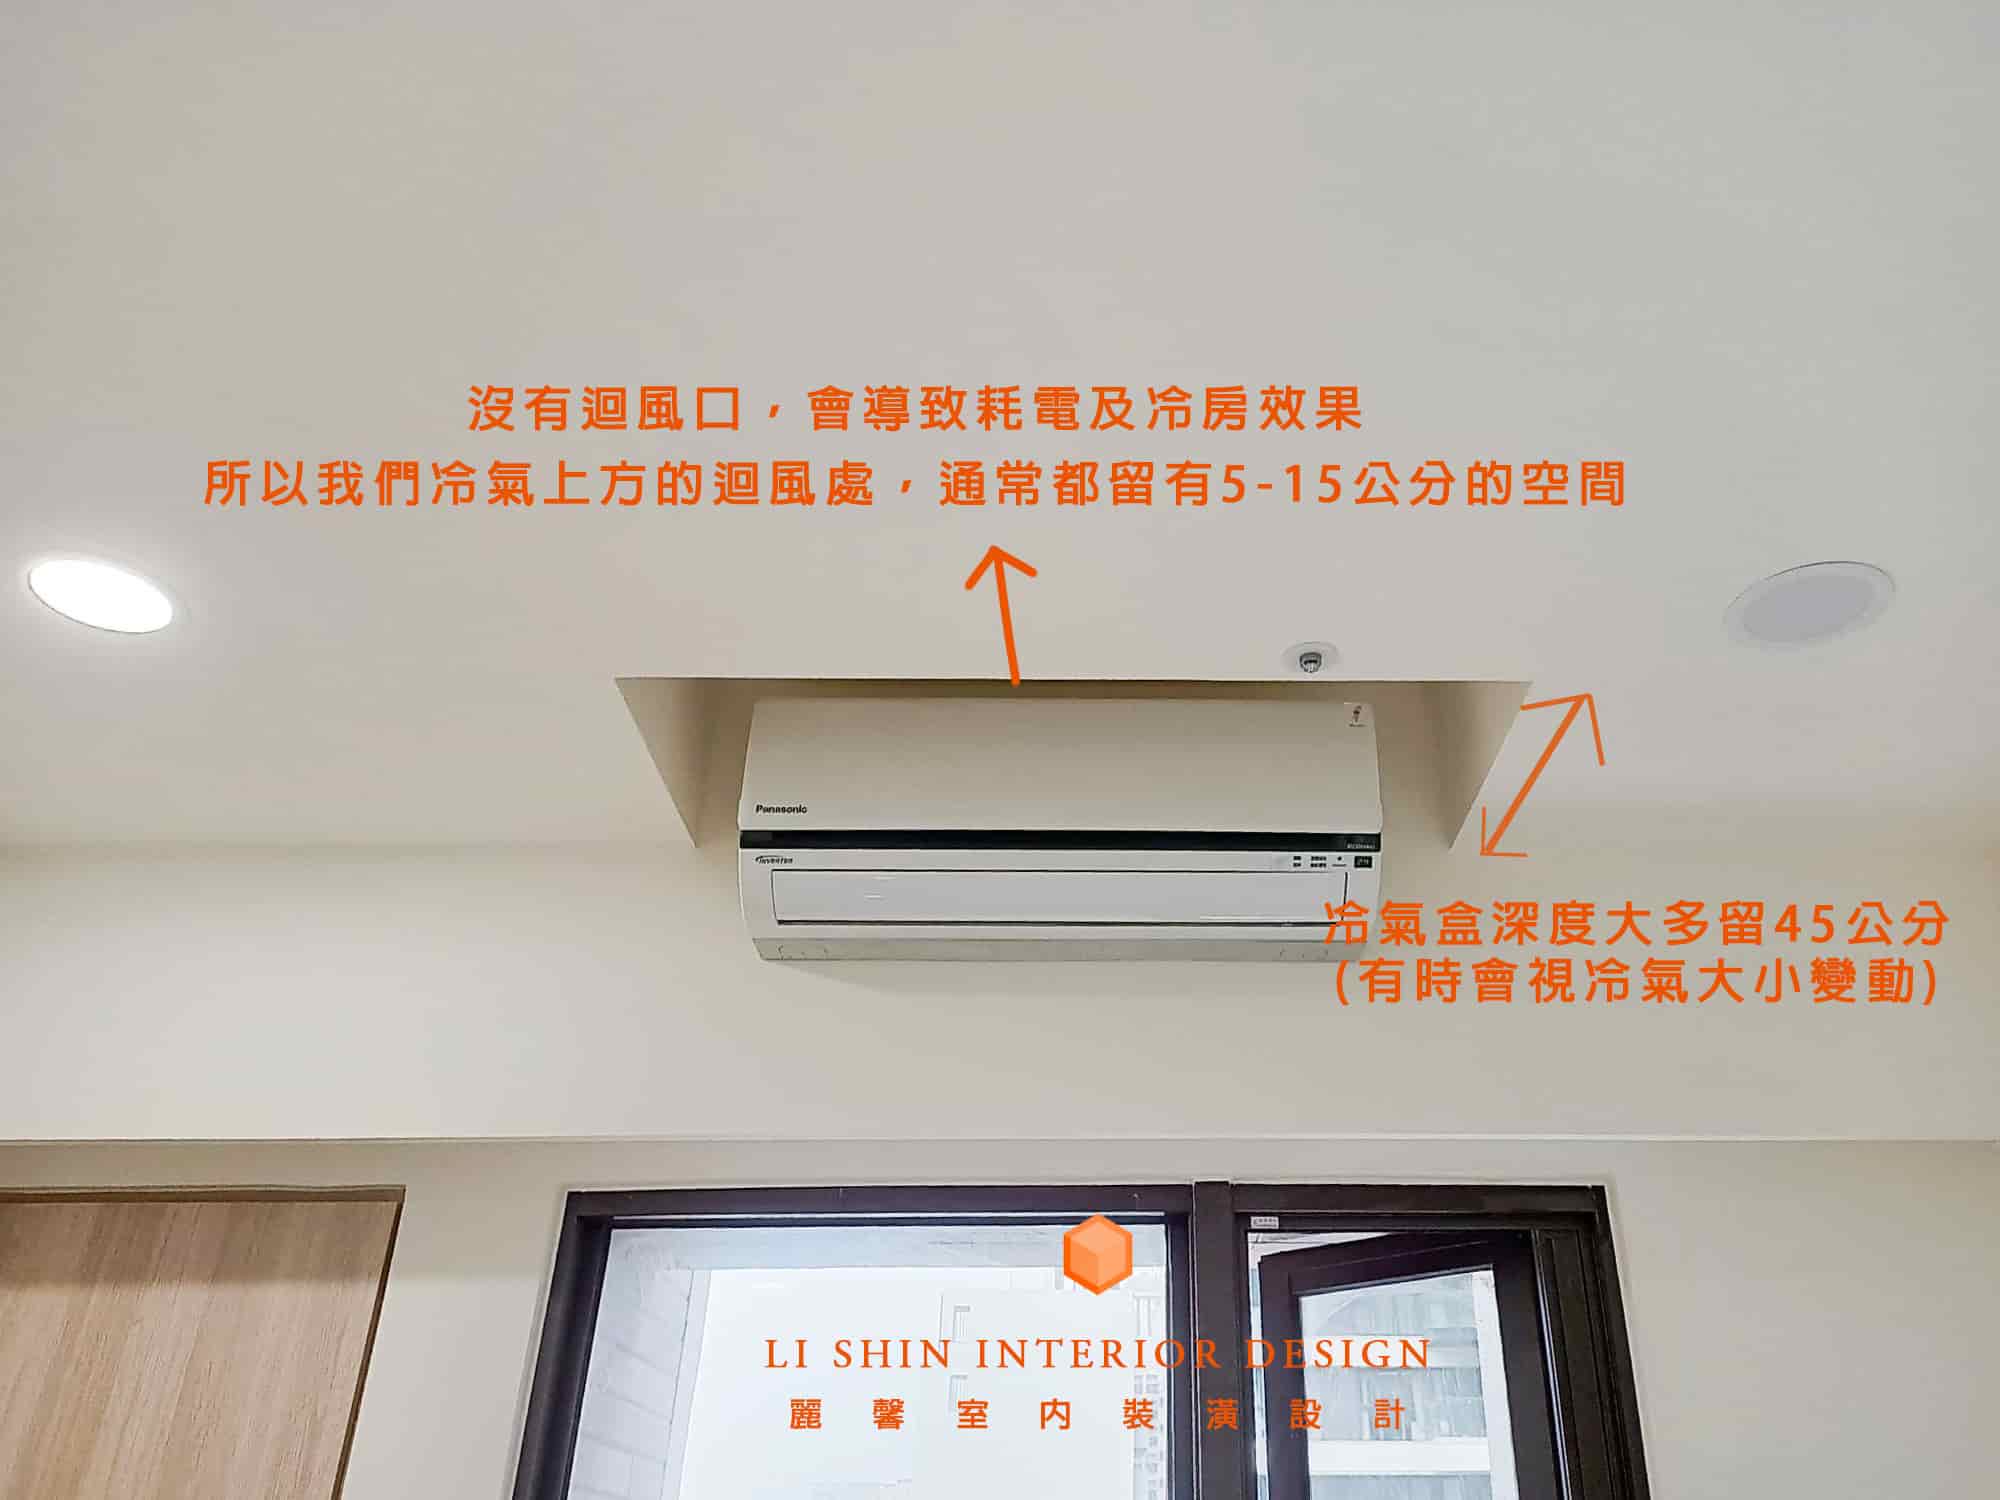 分離式冷氣需要離天花板幾公分?迴風口沒留會影響室內機嗎?